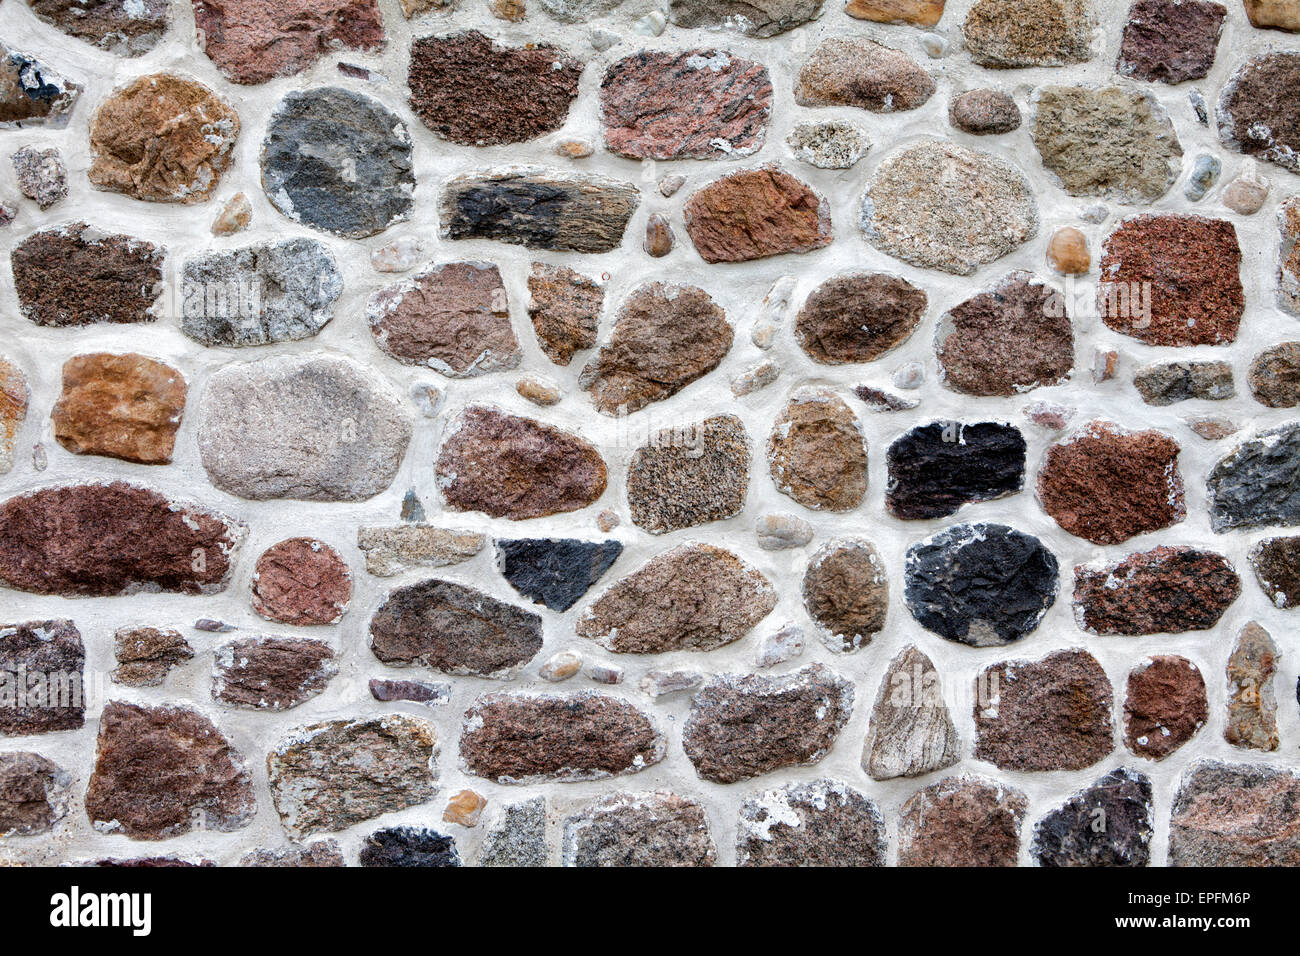 Mur de pierre faite de briques et de blocs erratiques, Basse-Saxe, Allemagne, Europe Banque D'Images